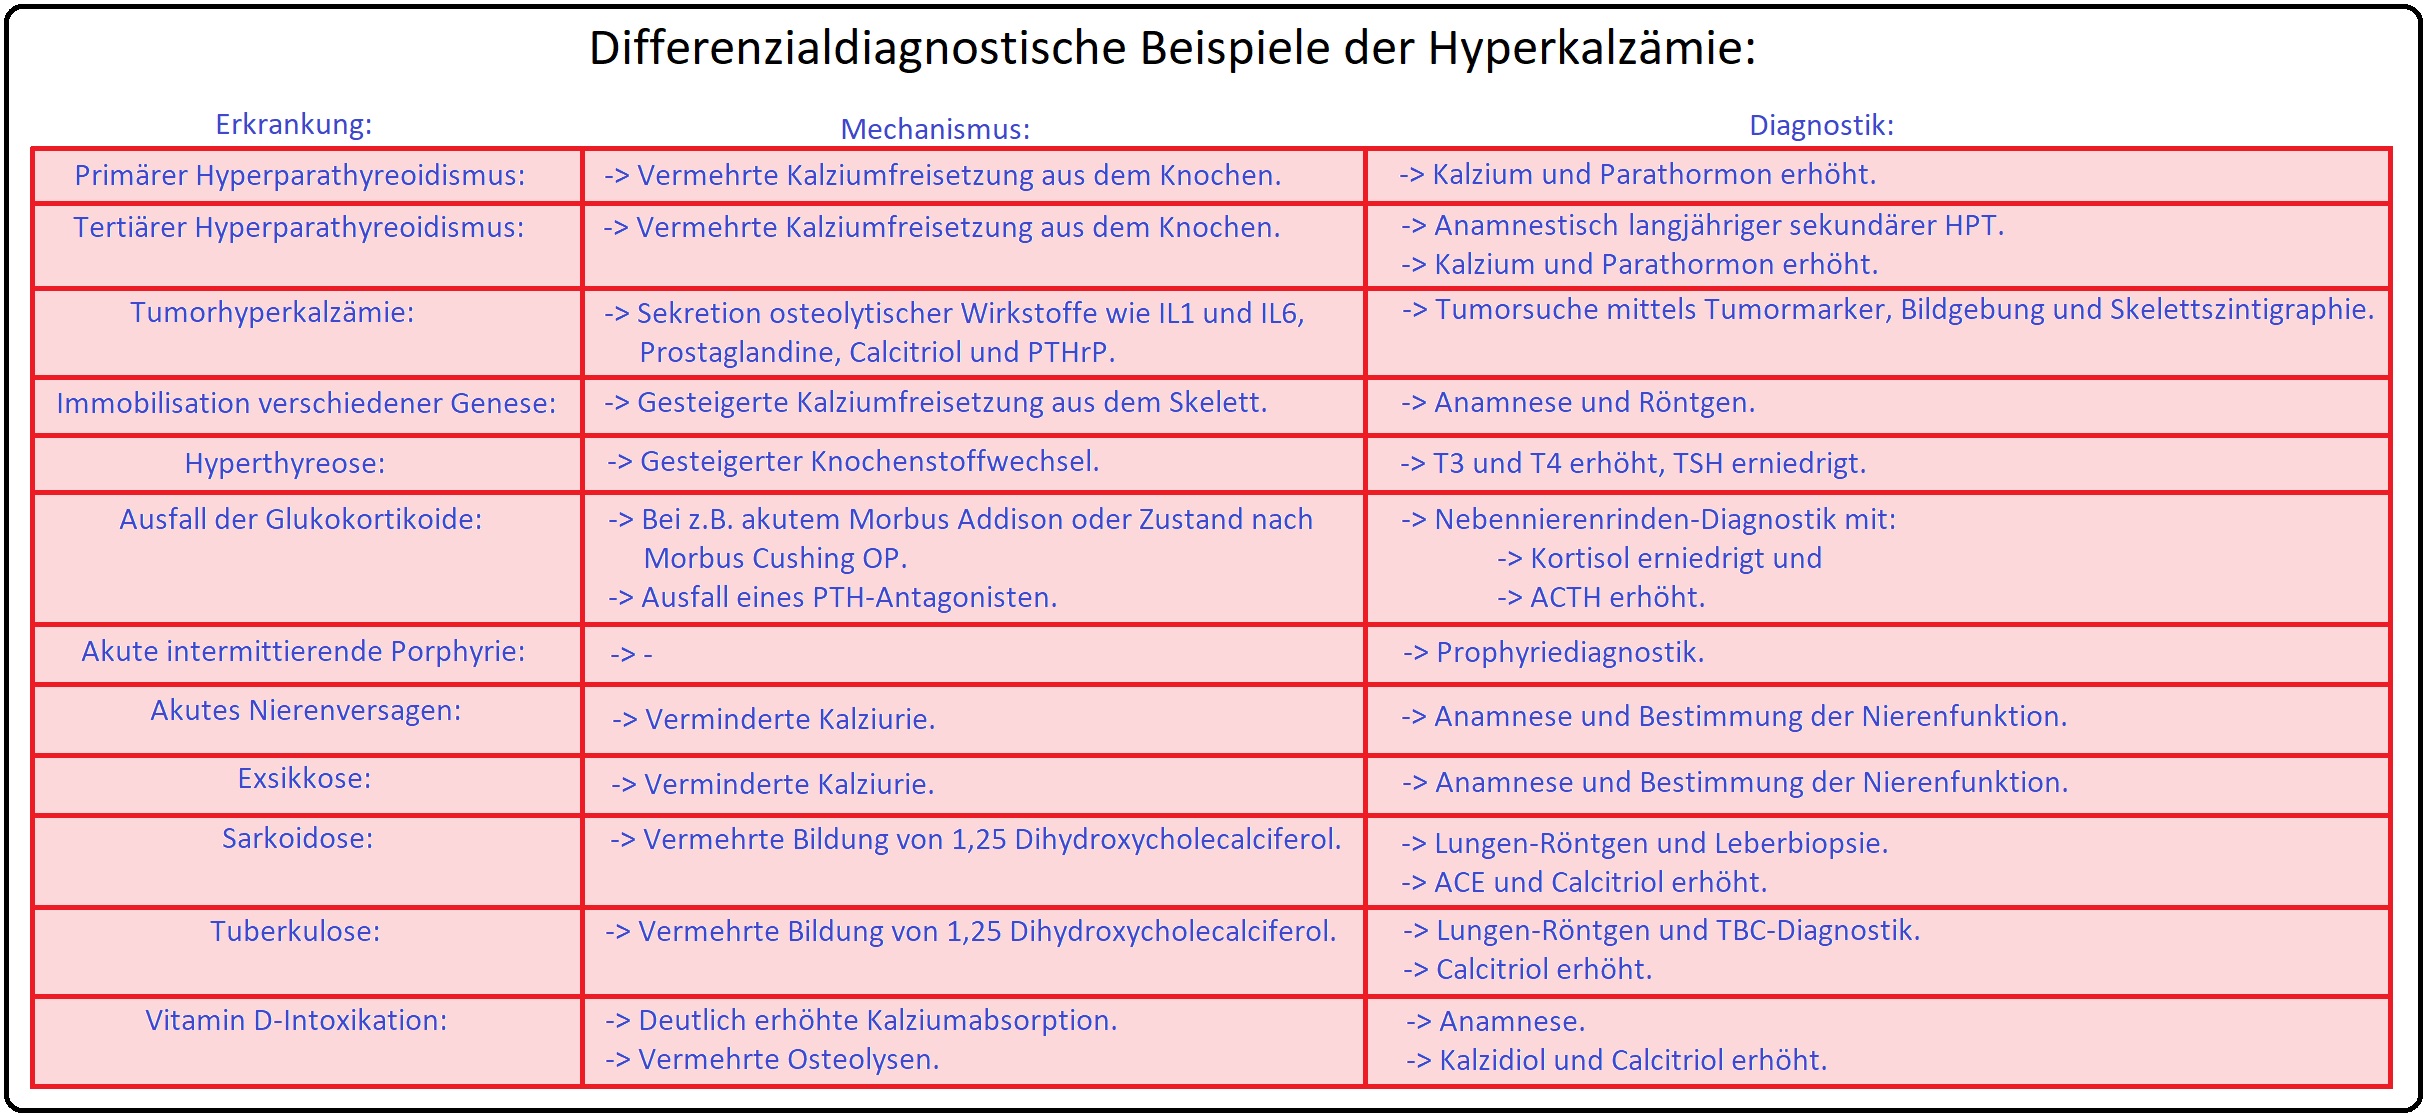 917 Differenzialdiagnostische Beispiele der Hyperkalzämie